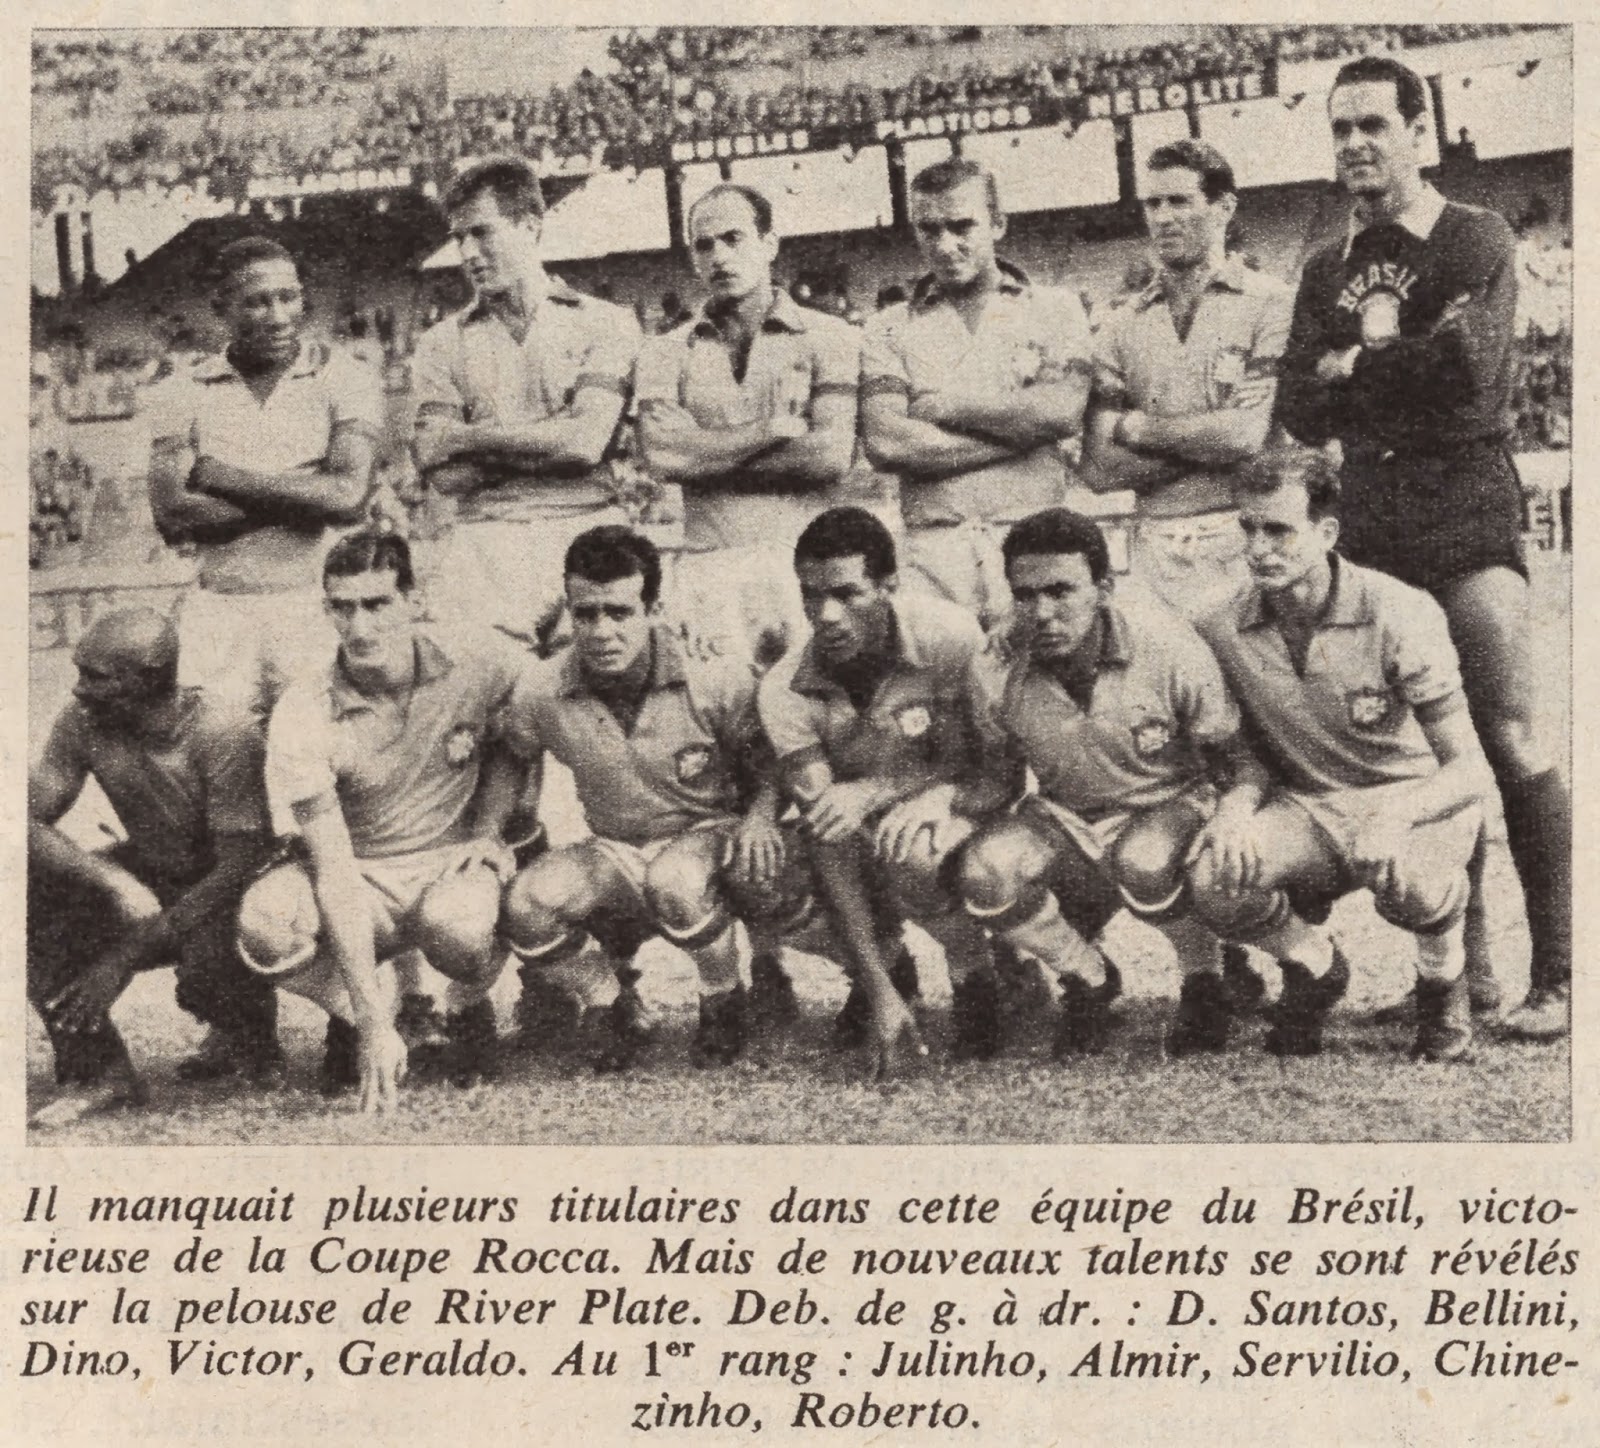 Сборная Бразилии перед матчем с Аргентиной в Кубке Рока (Алмир - третий слева в певом ряду)